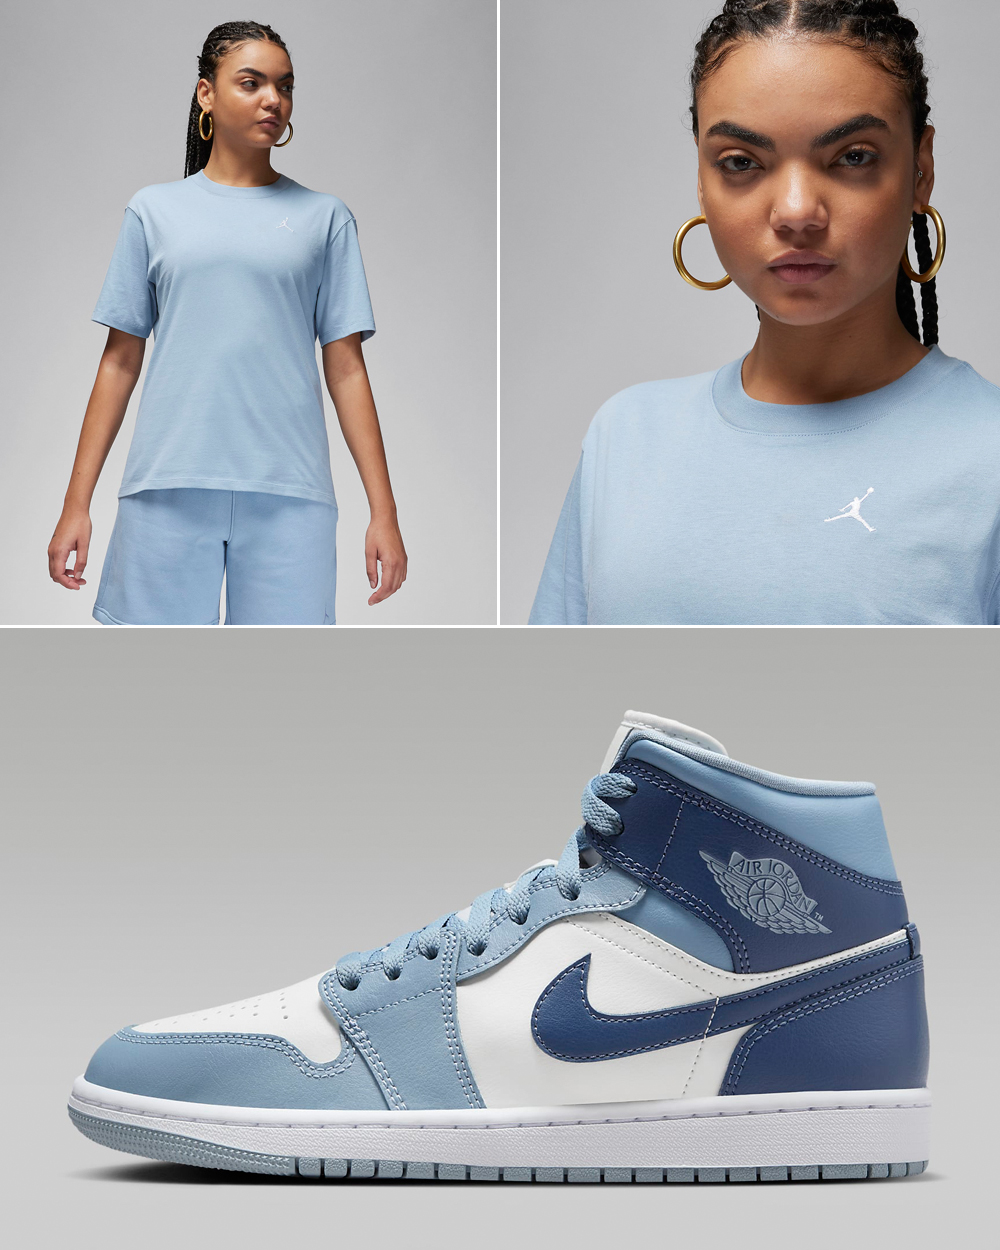 Air-Jordan-1-Mid-Womens-Blue-Grey-Diffused-Blue-Shirt-4